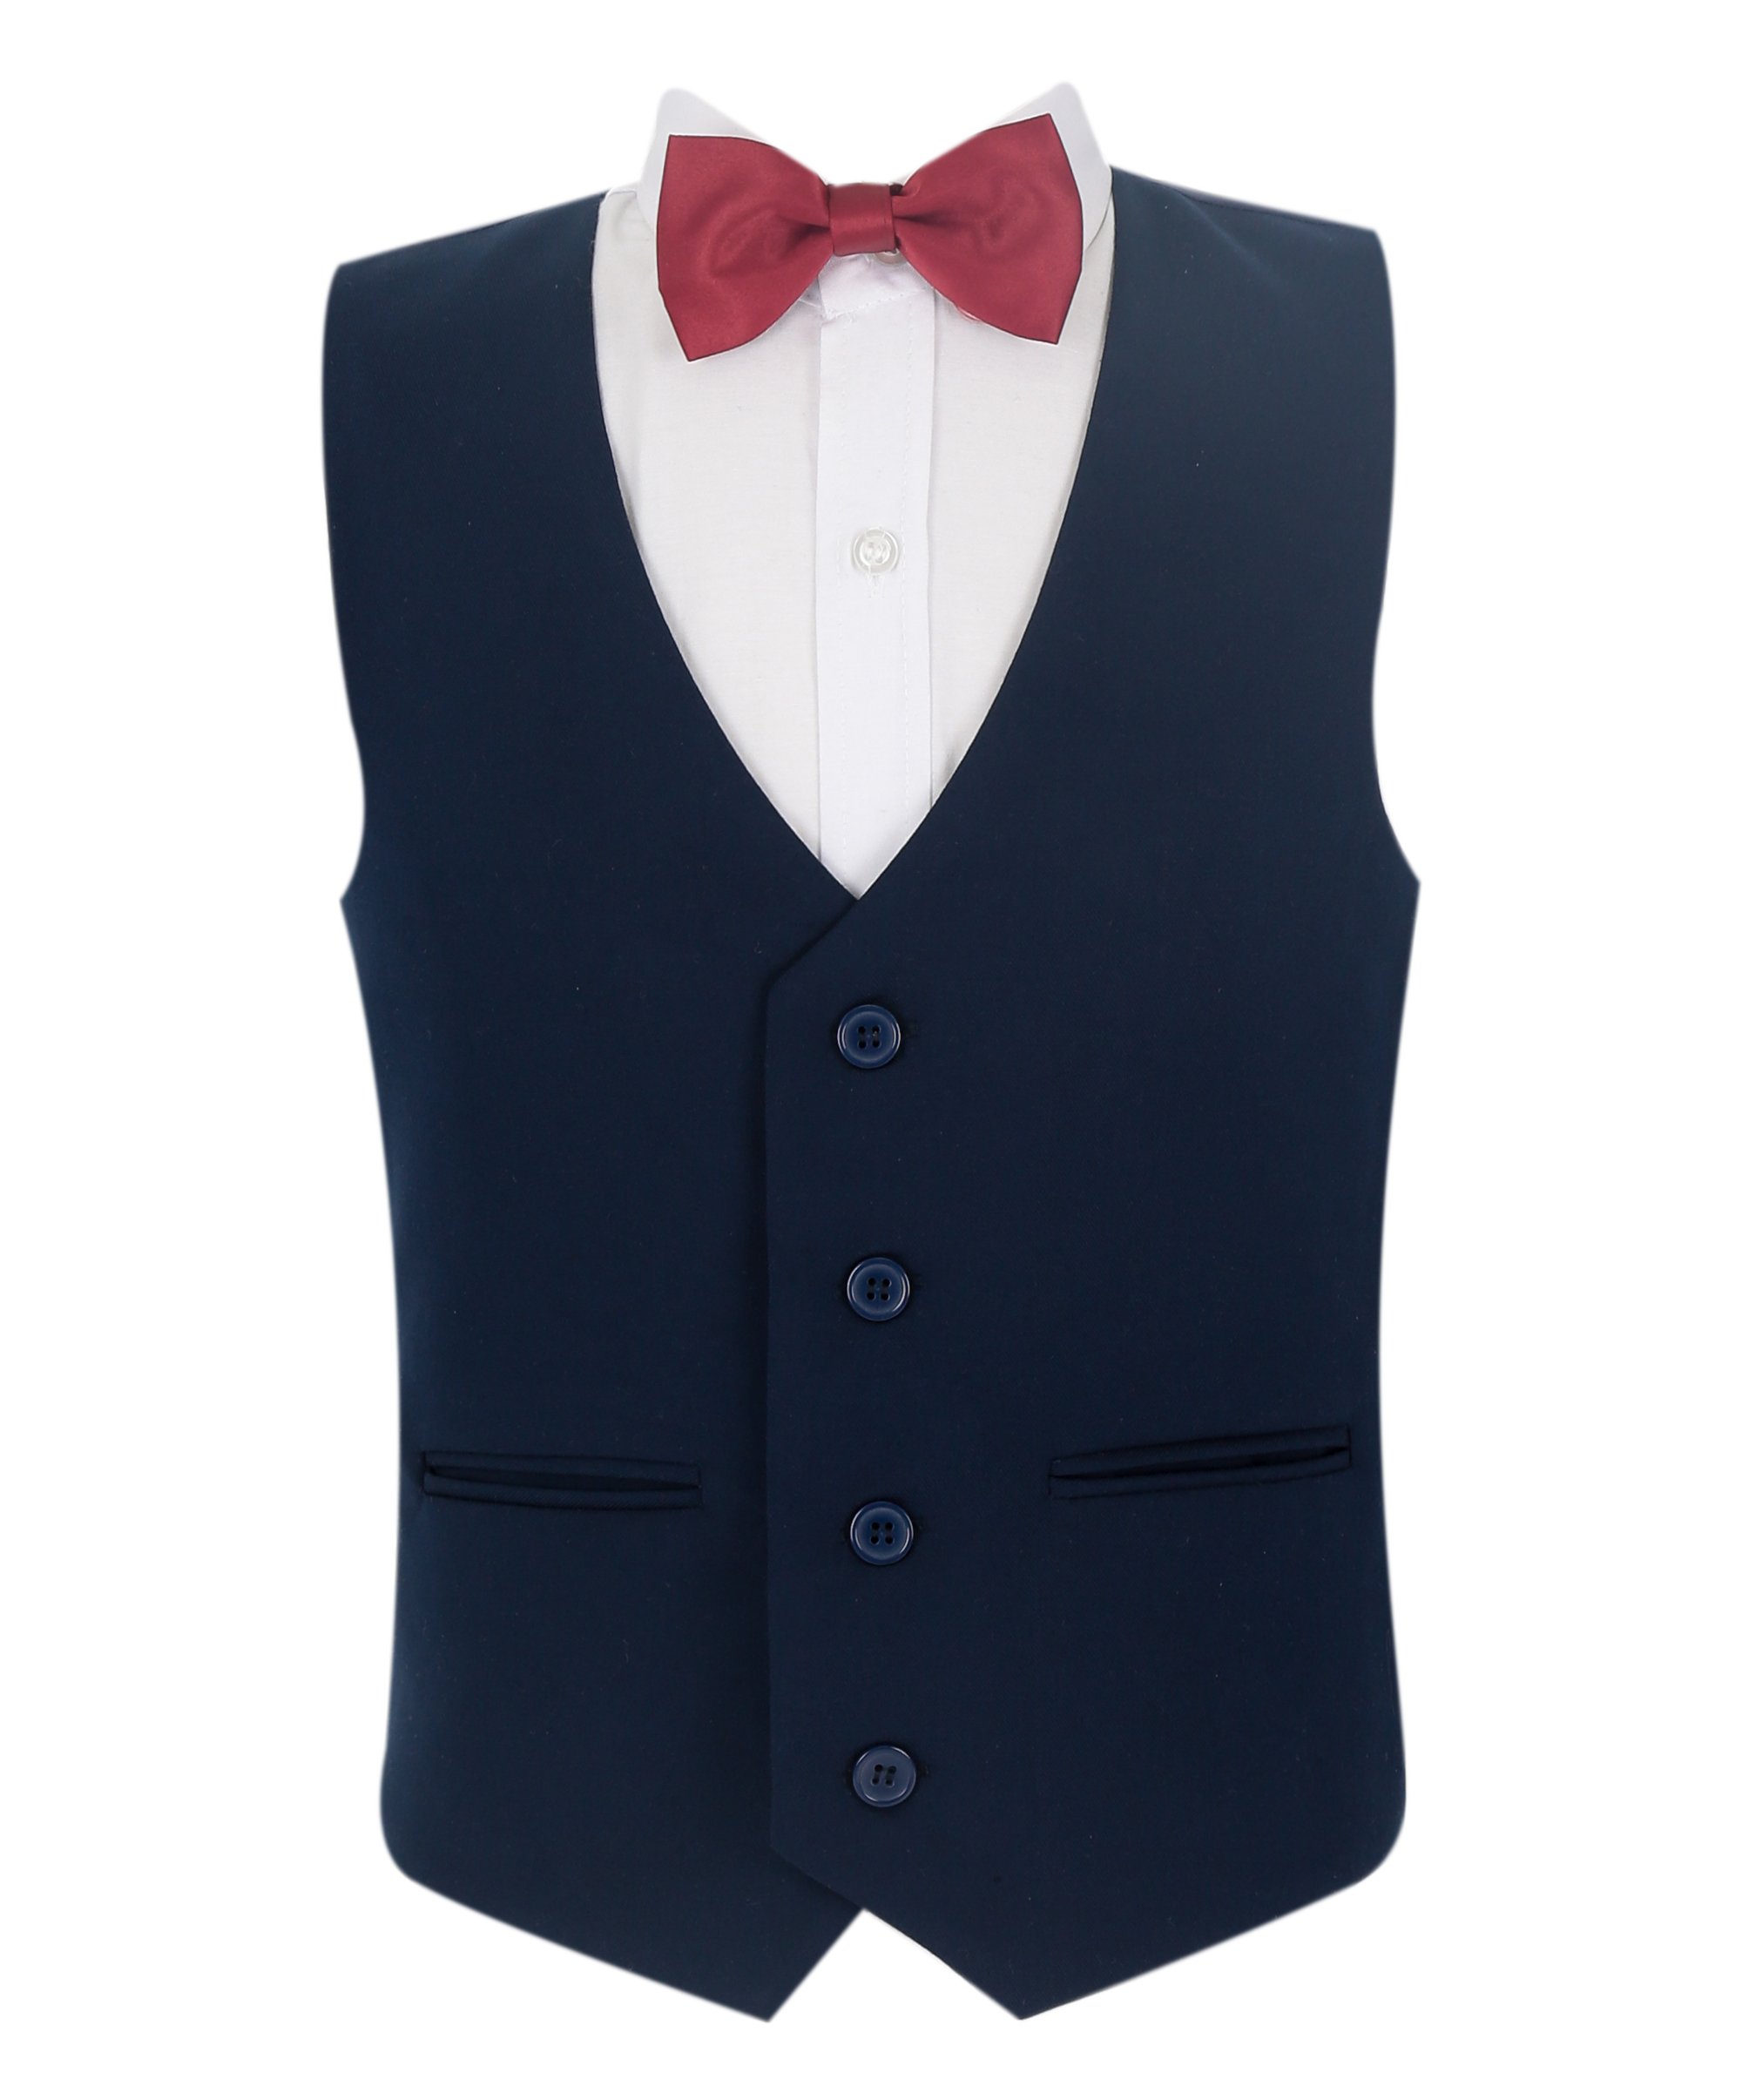 Boys Summer Vest Suit 4 PC Set - Navy Blue